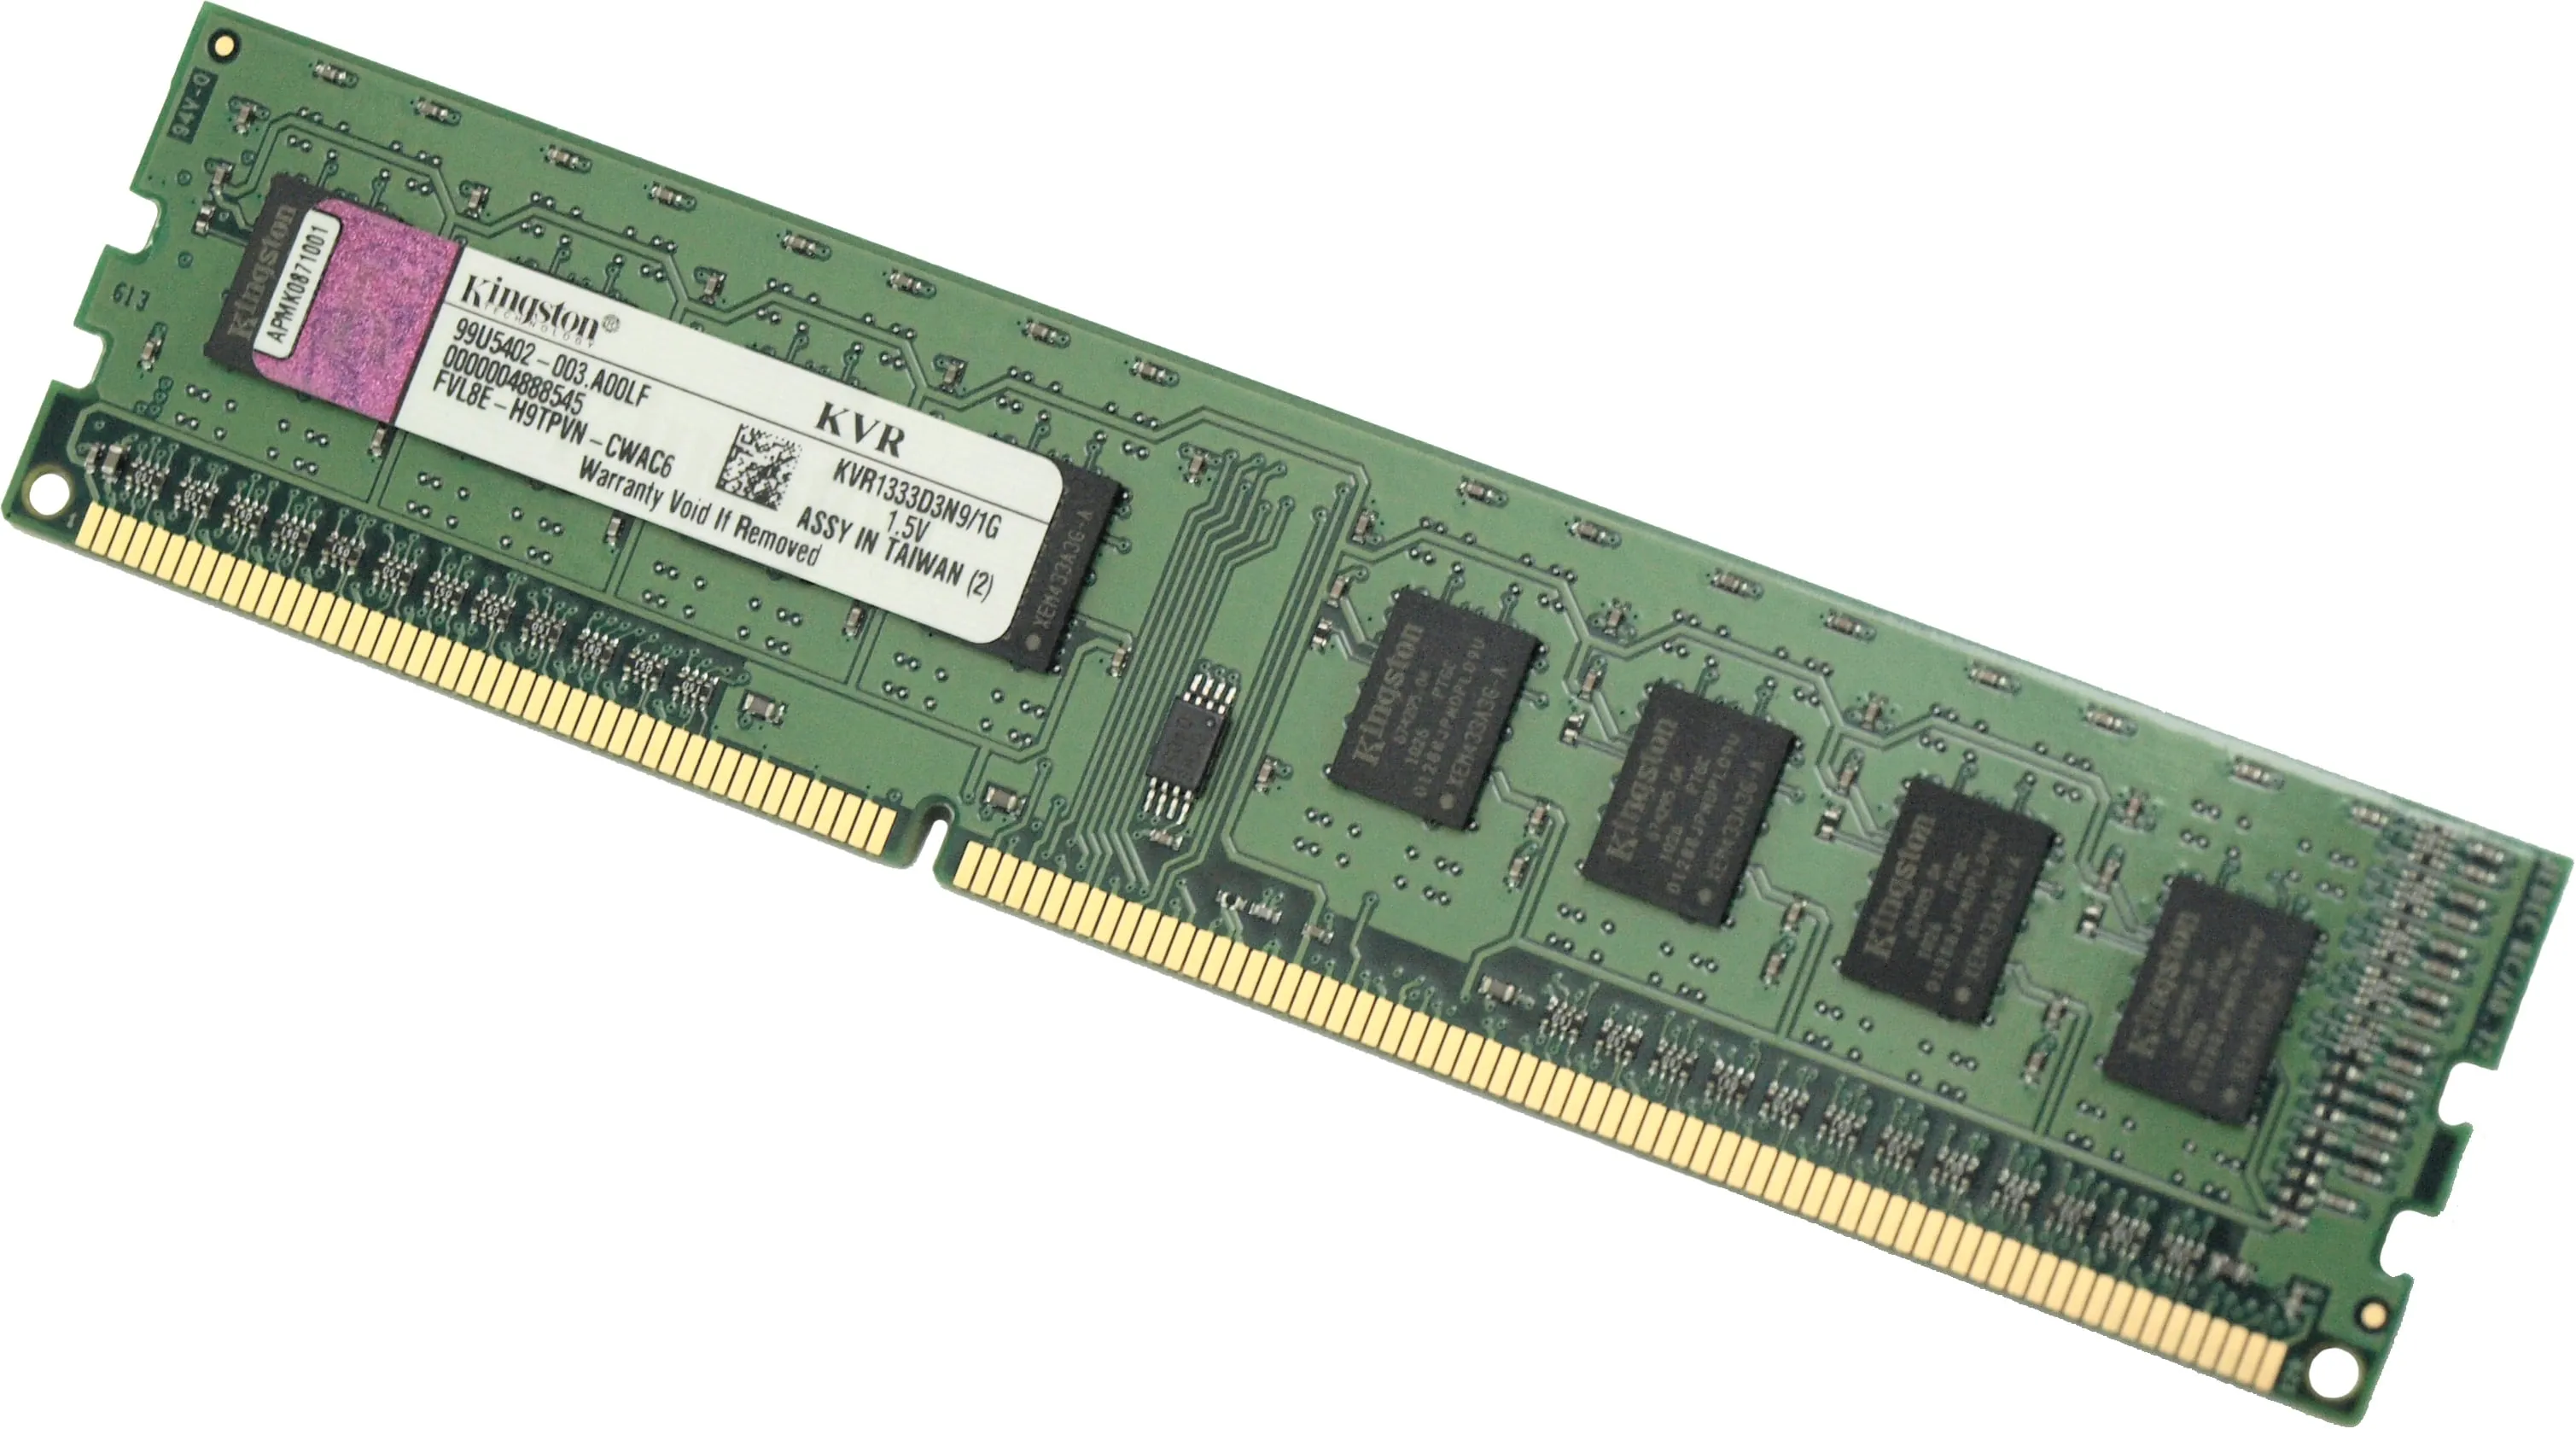 Che differenza c’è tra una RAM DDR4 e DDR3?